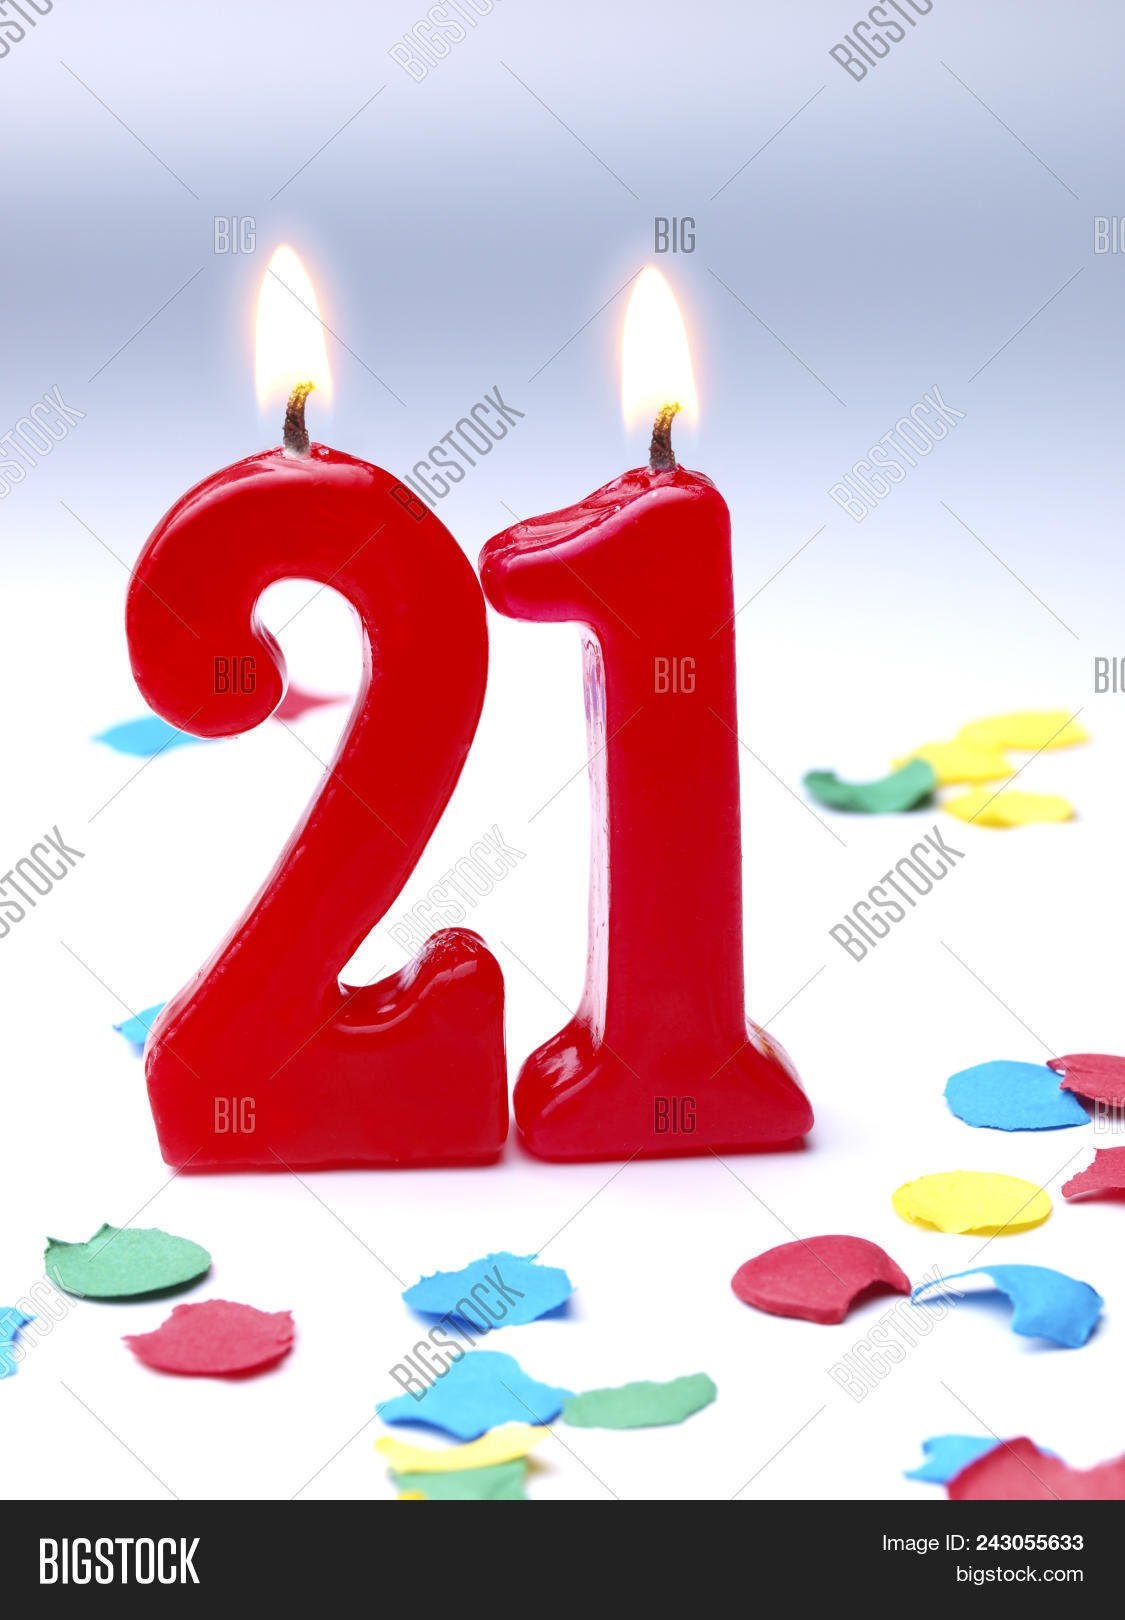 17 апреля 21 год. С днем рождения 21. С днём рождения 21 год. Открытки с днём рождения 21 год. 21 Годик с днем рождения.